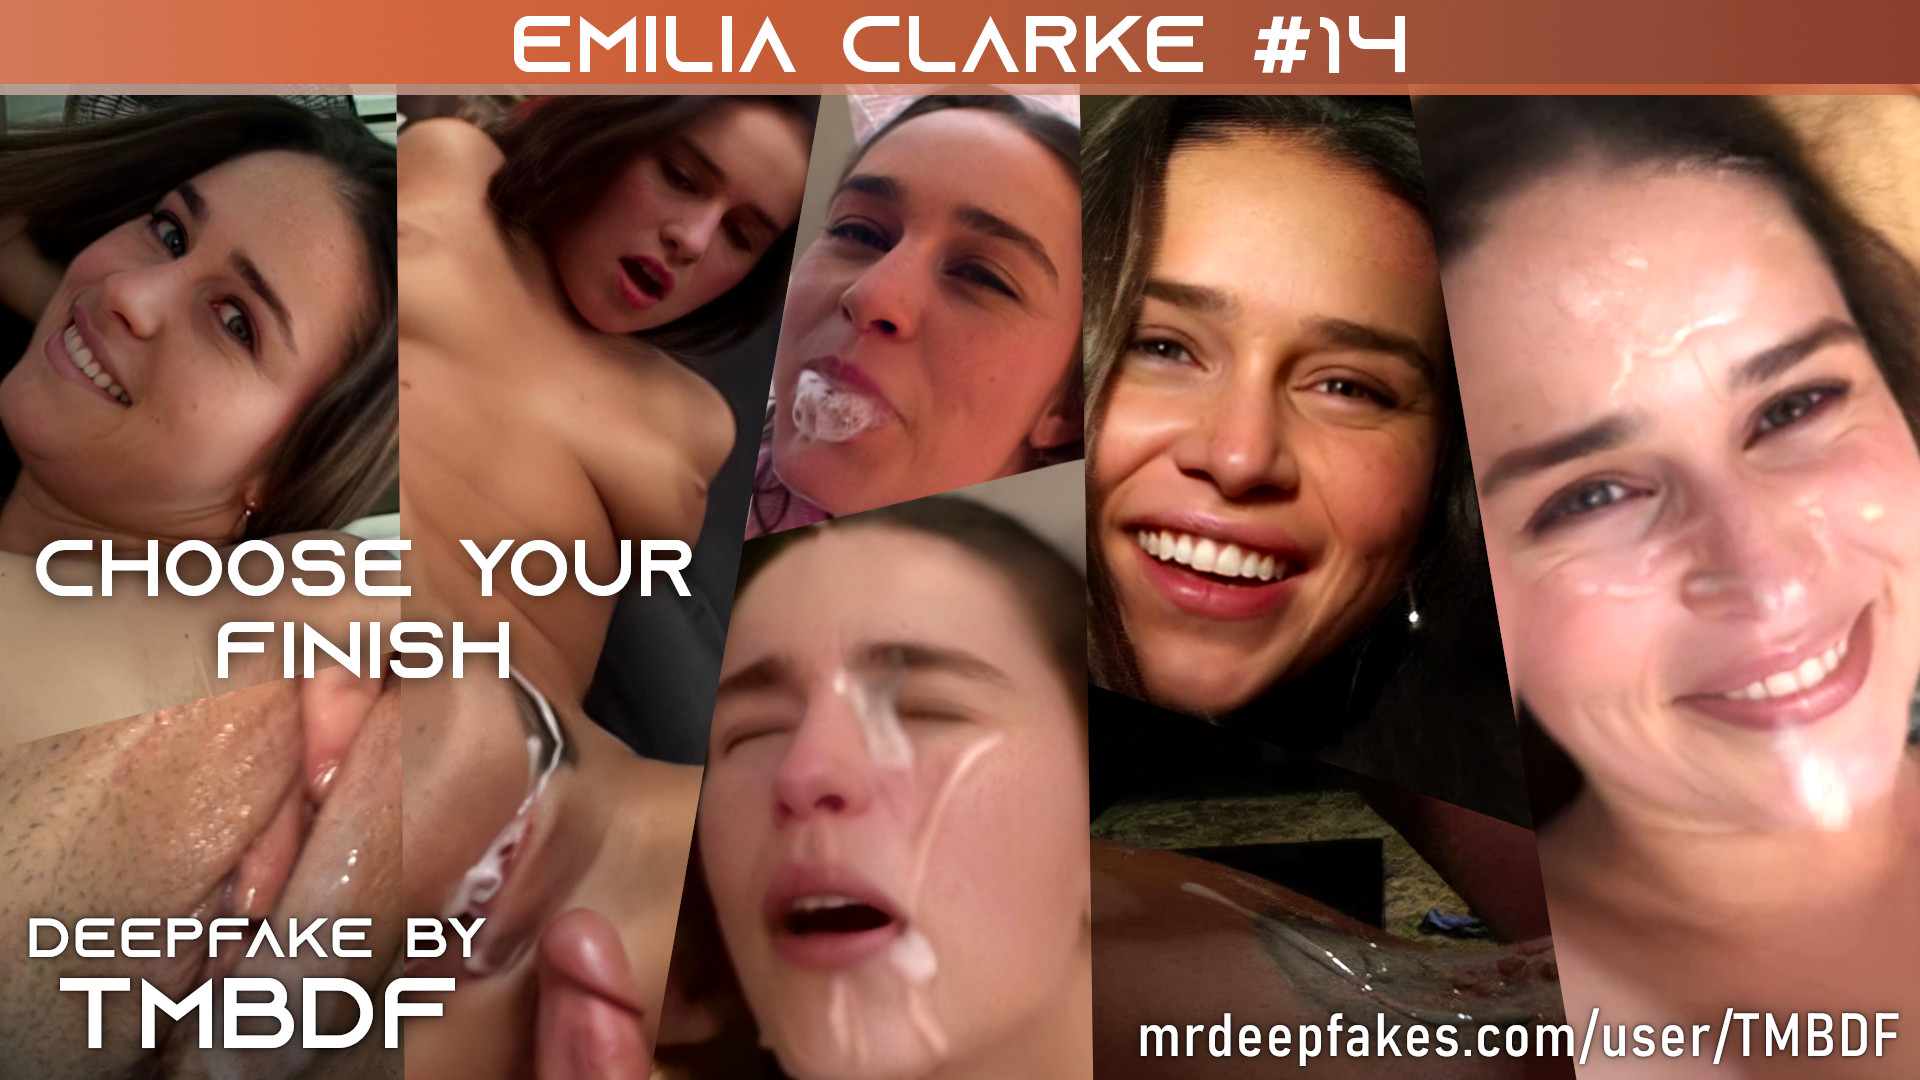 Emilia Clarke #14 - PREVIEW - Full version (24:00) in video description